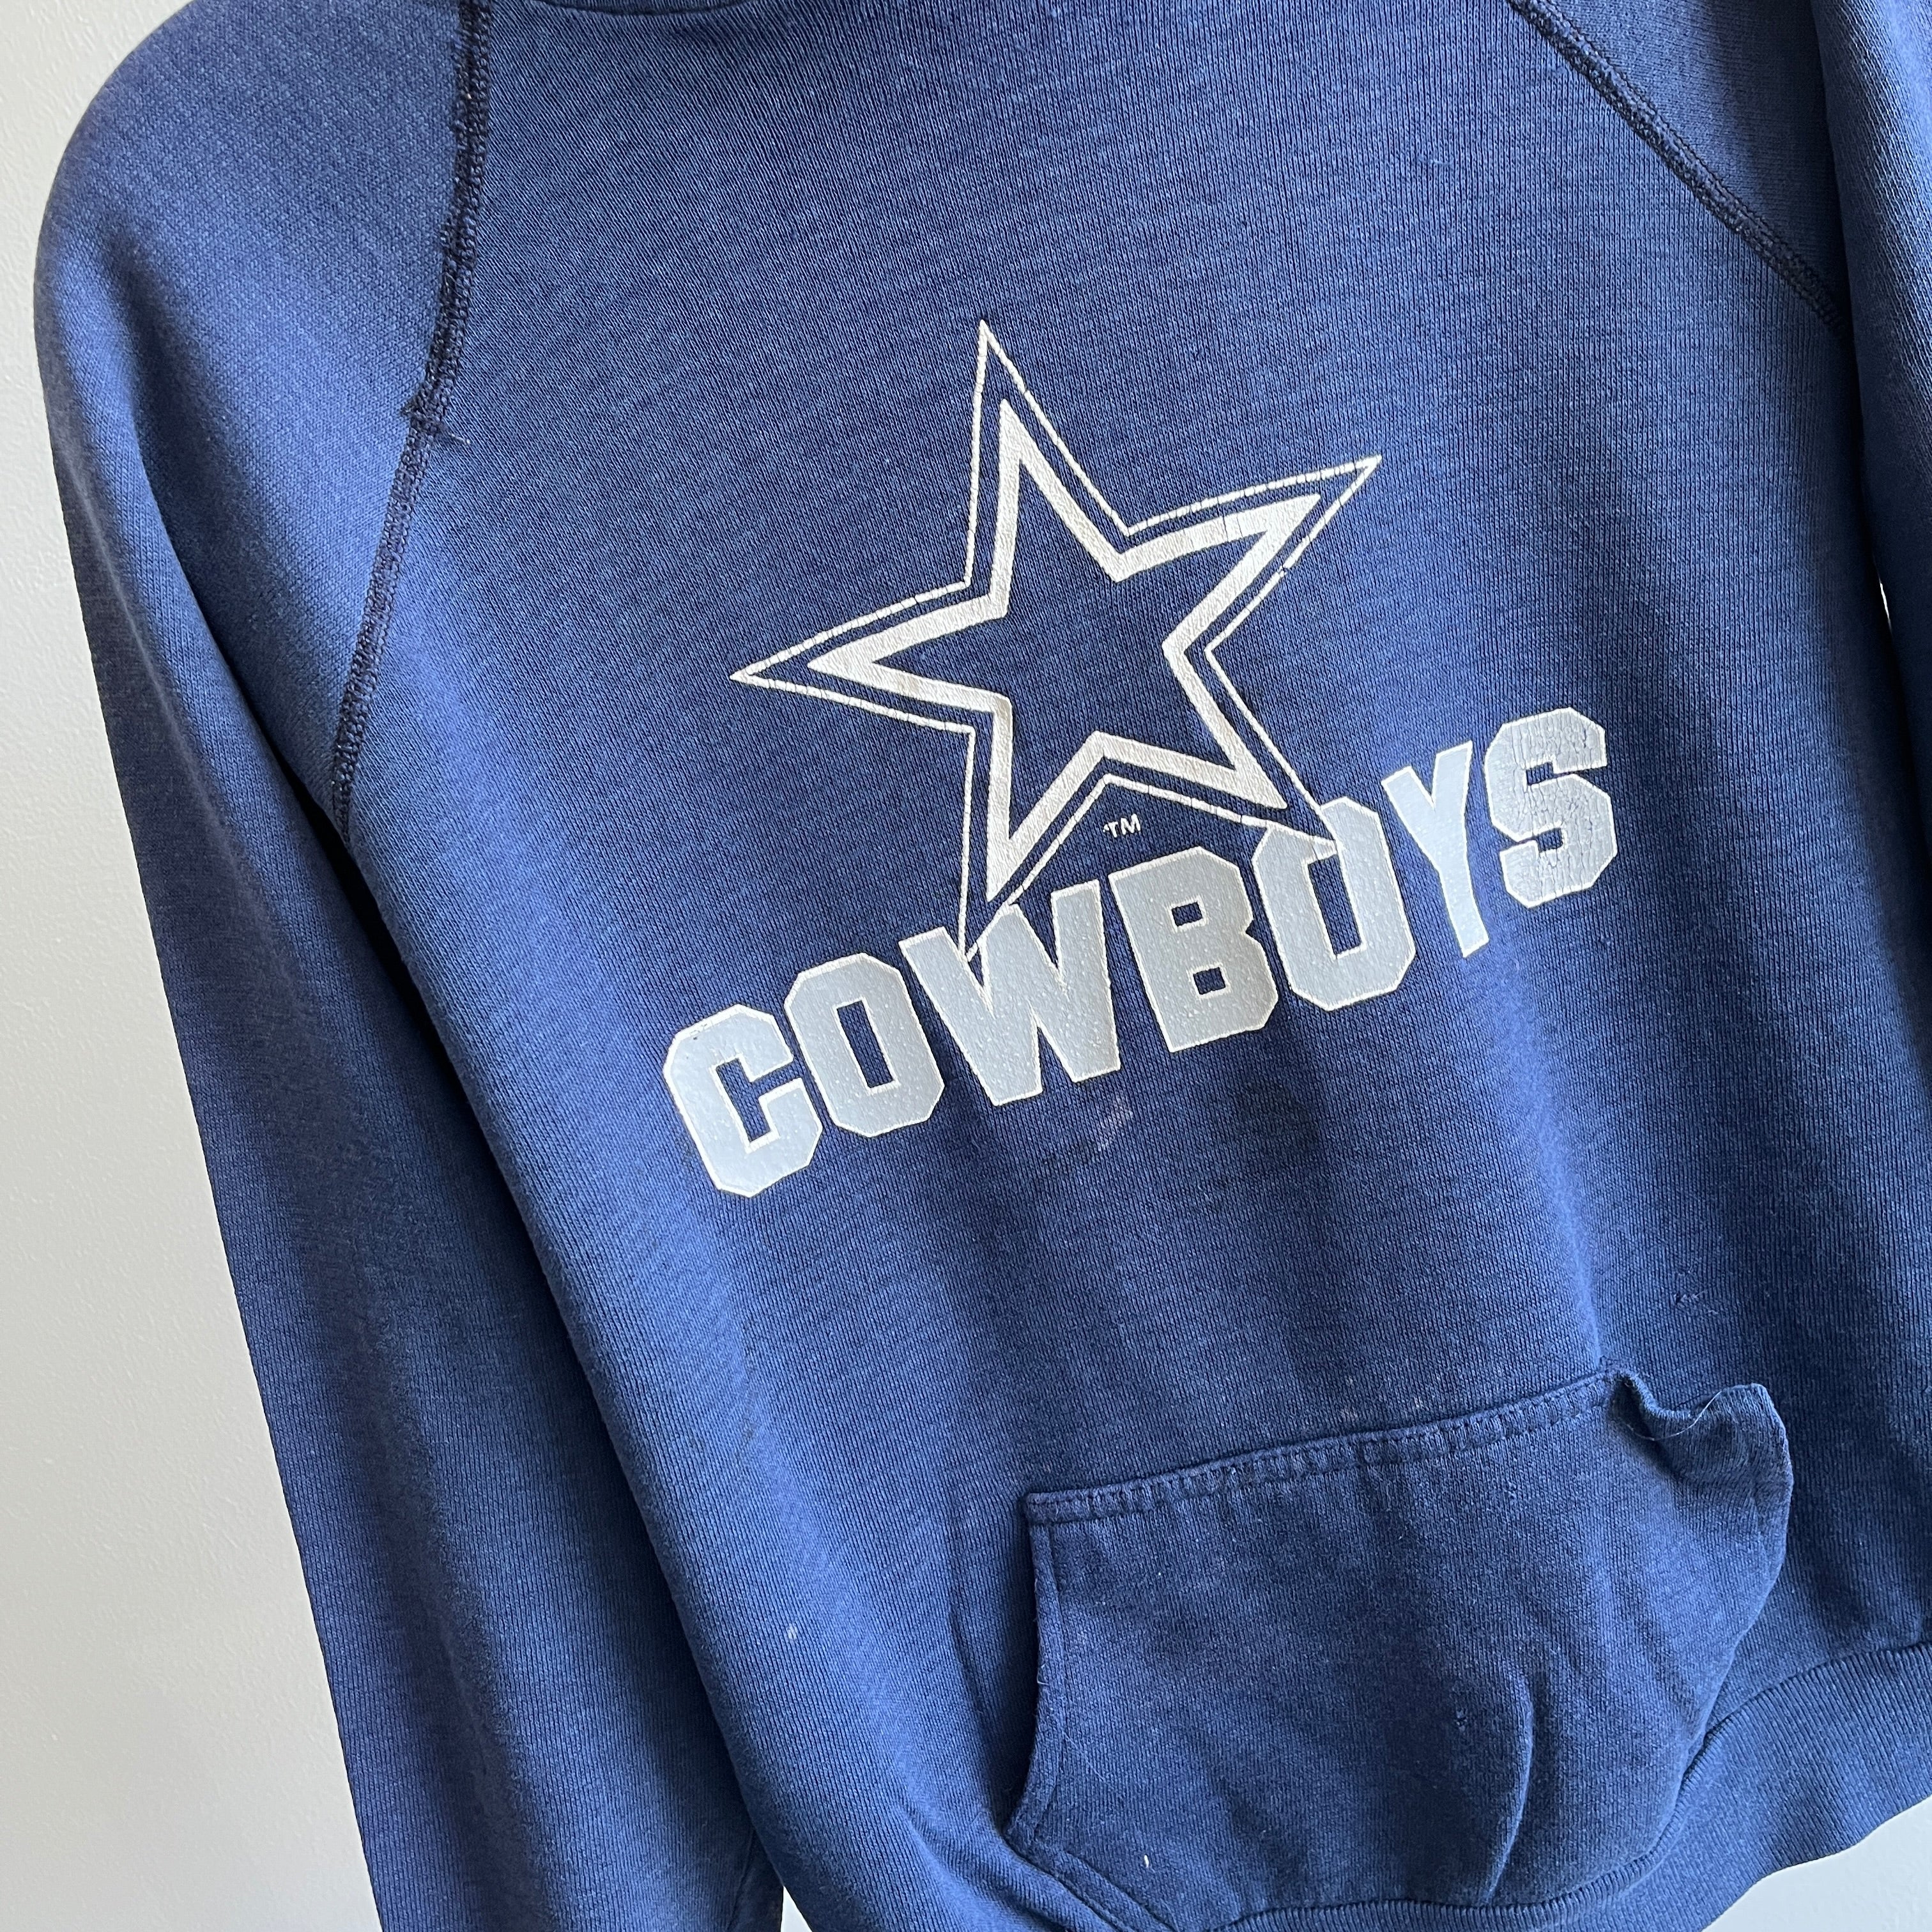 dallas cowboys crewneck sweatshirt vintage